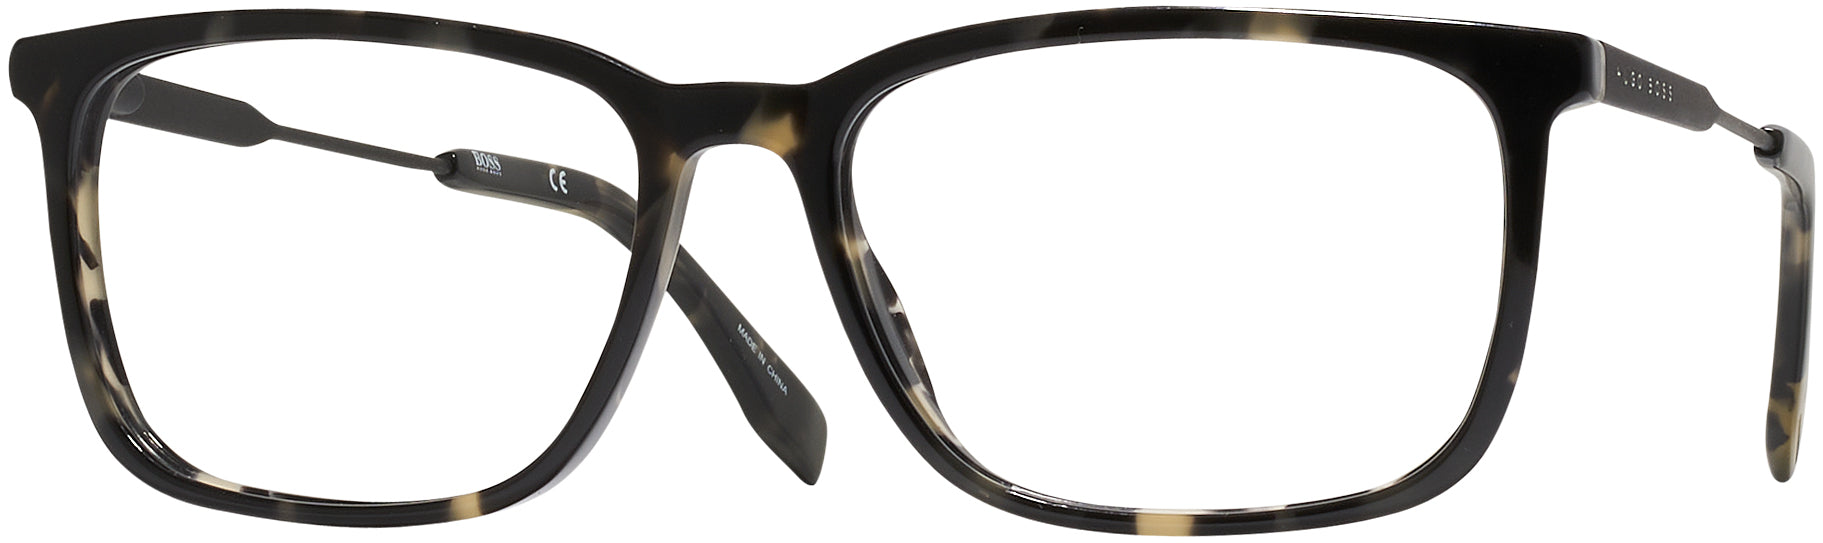 Hugo Boss 0995 Single Vision Full Reading Glasses –